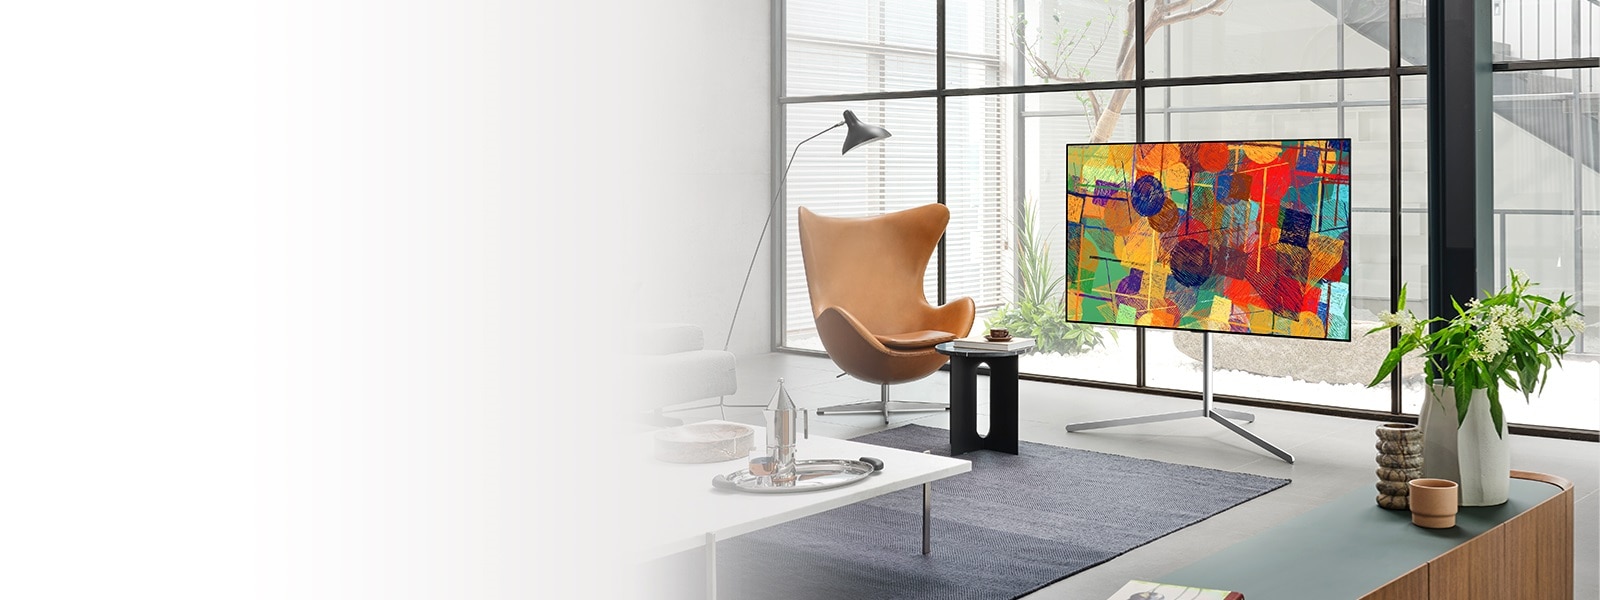 Три телевизора Gallery Design със стойка, които изглеждат като произведения на изкуството, където и да са поставени